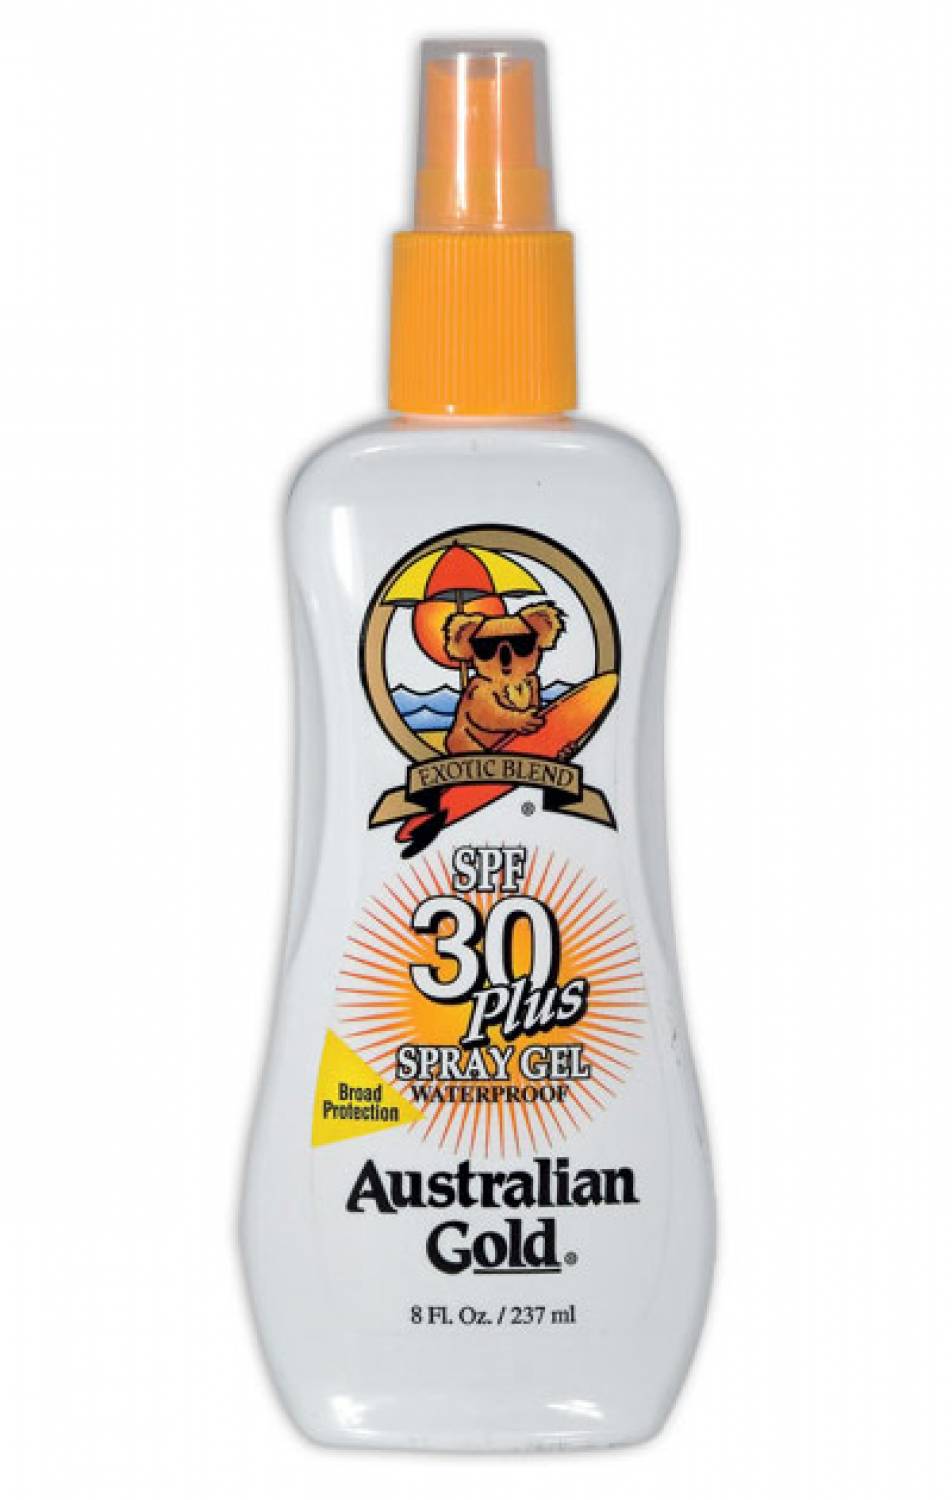 Australian Gold SPF 30 Żel Spray obfite zbiory!